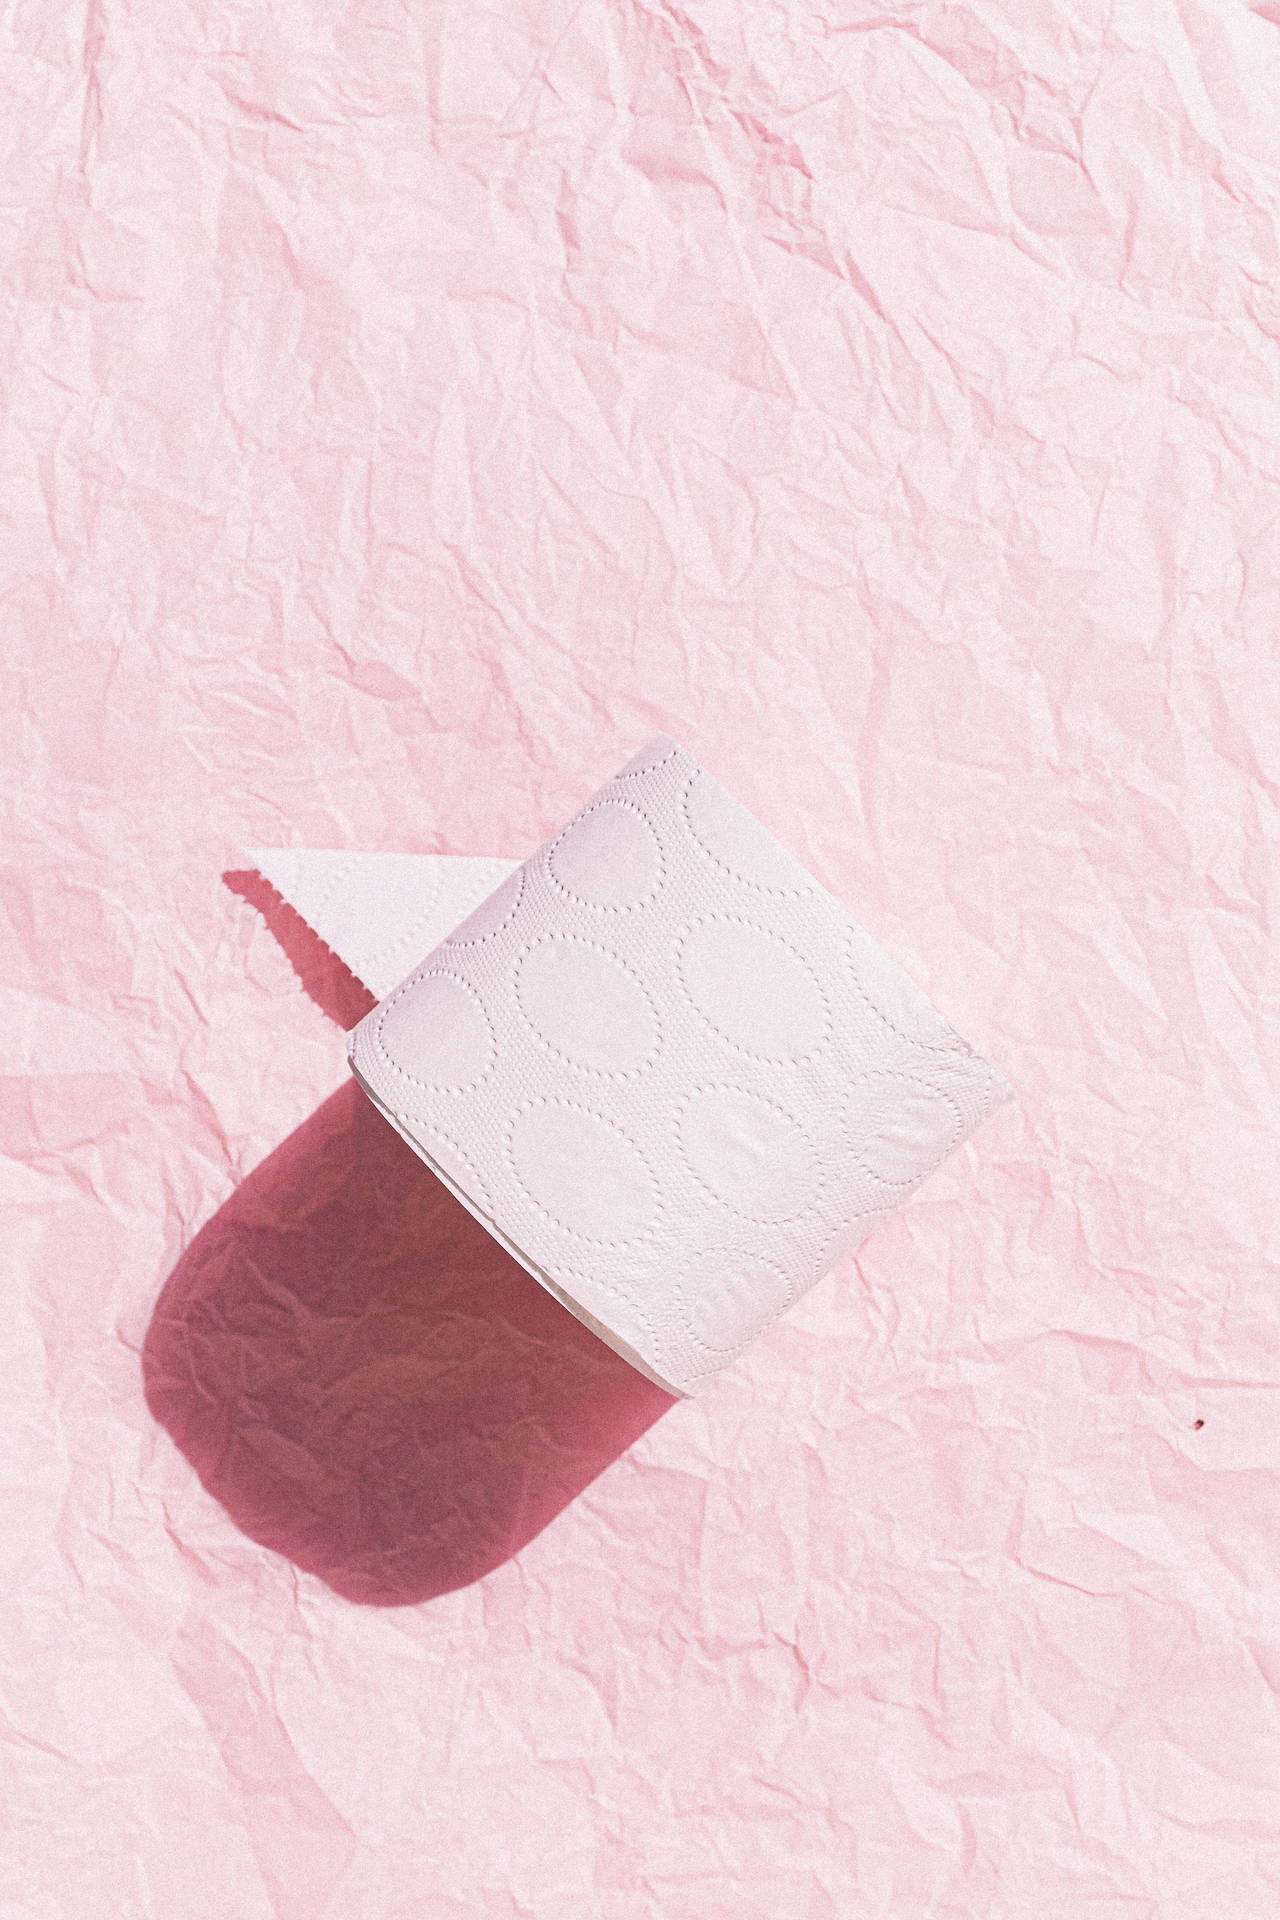 Tissue On Pink Background